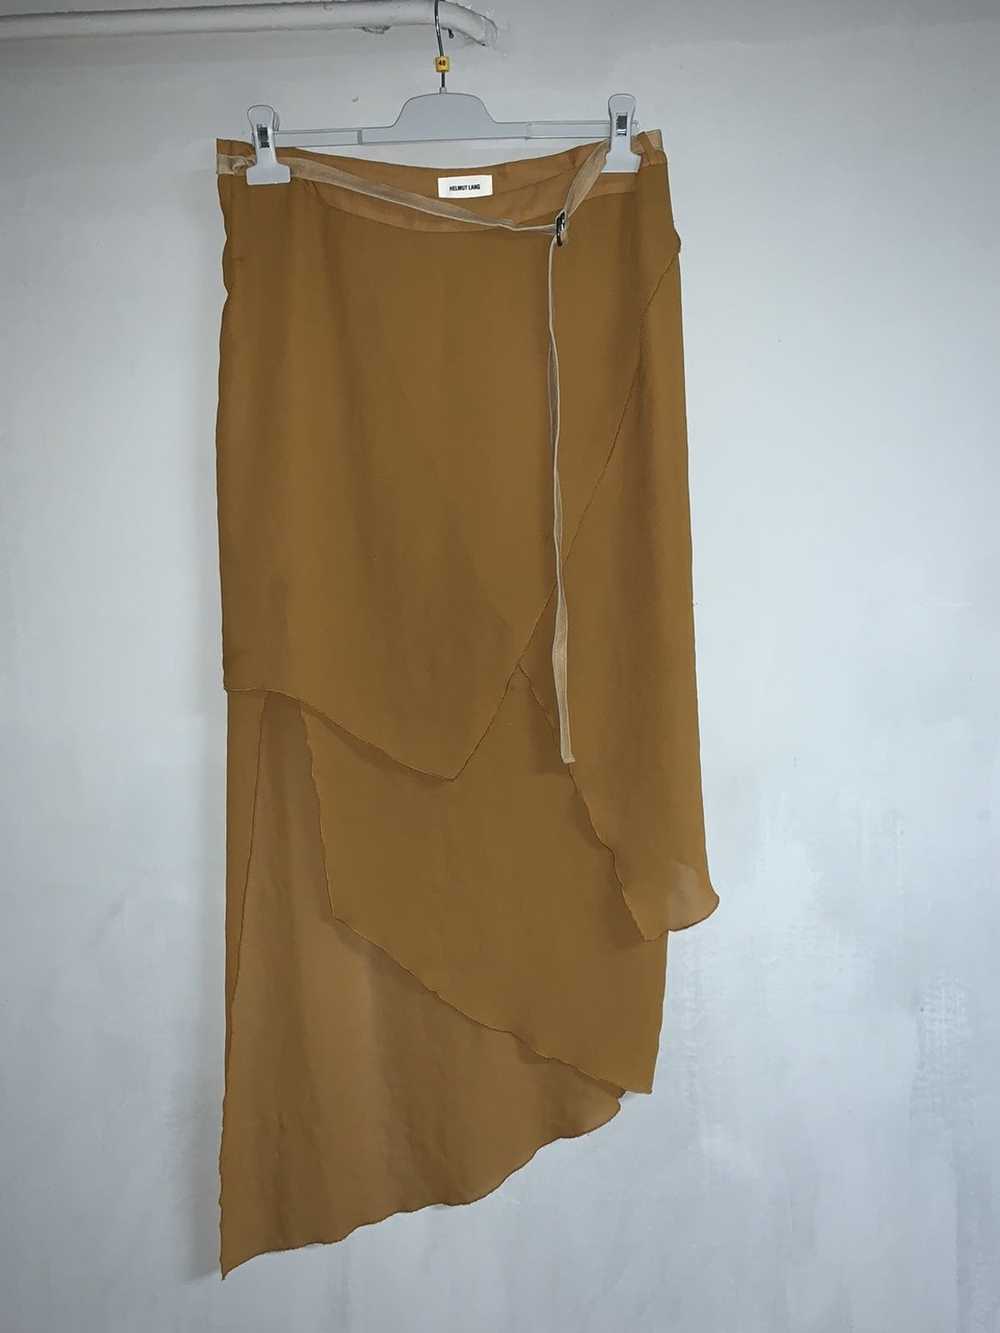 Helmut Lang Helmut Lang leather belt skirt - image 1